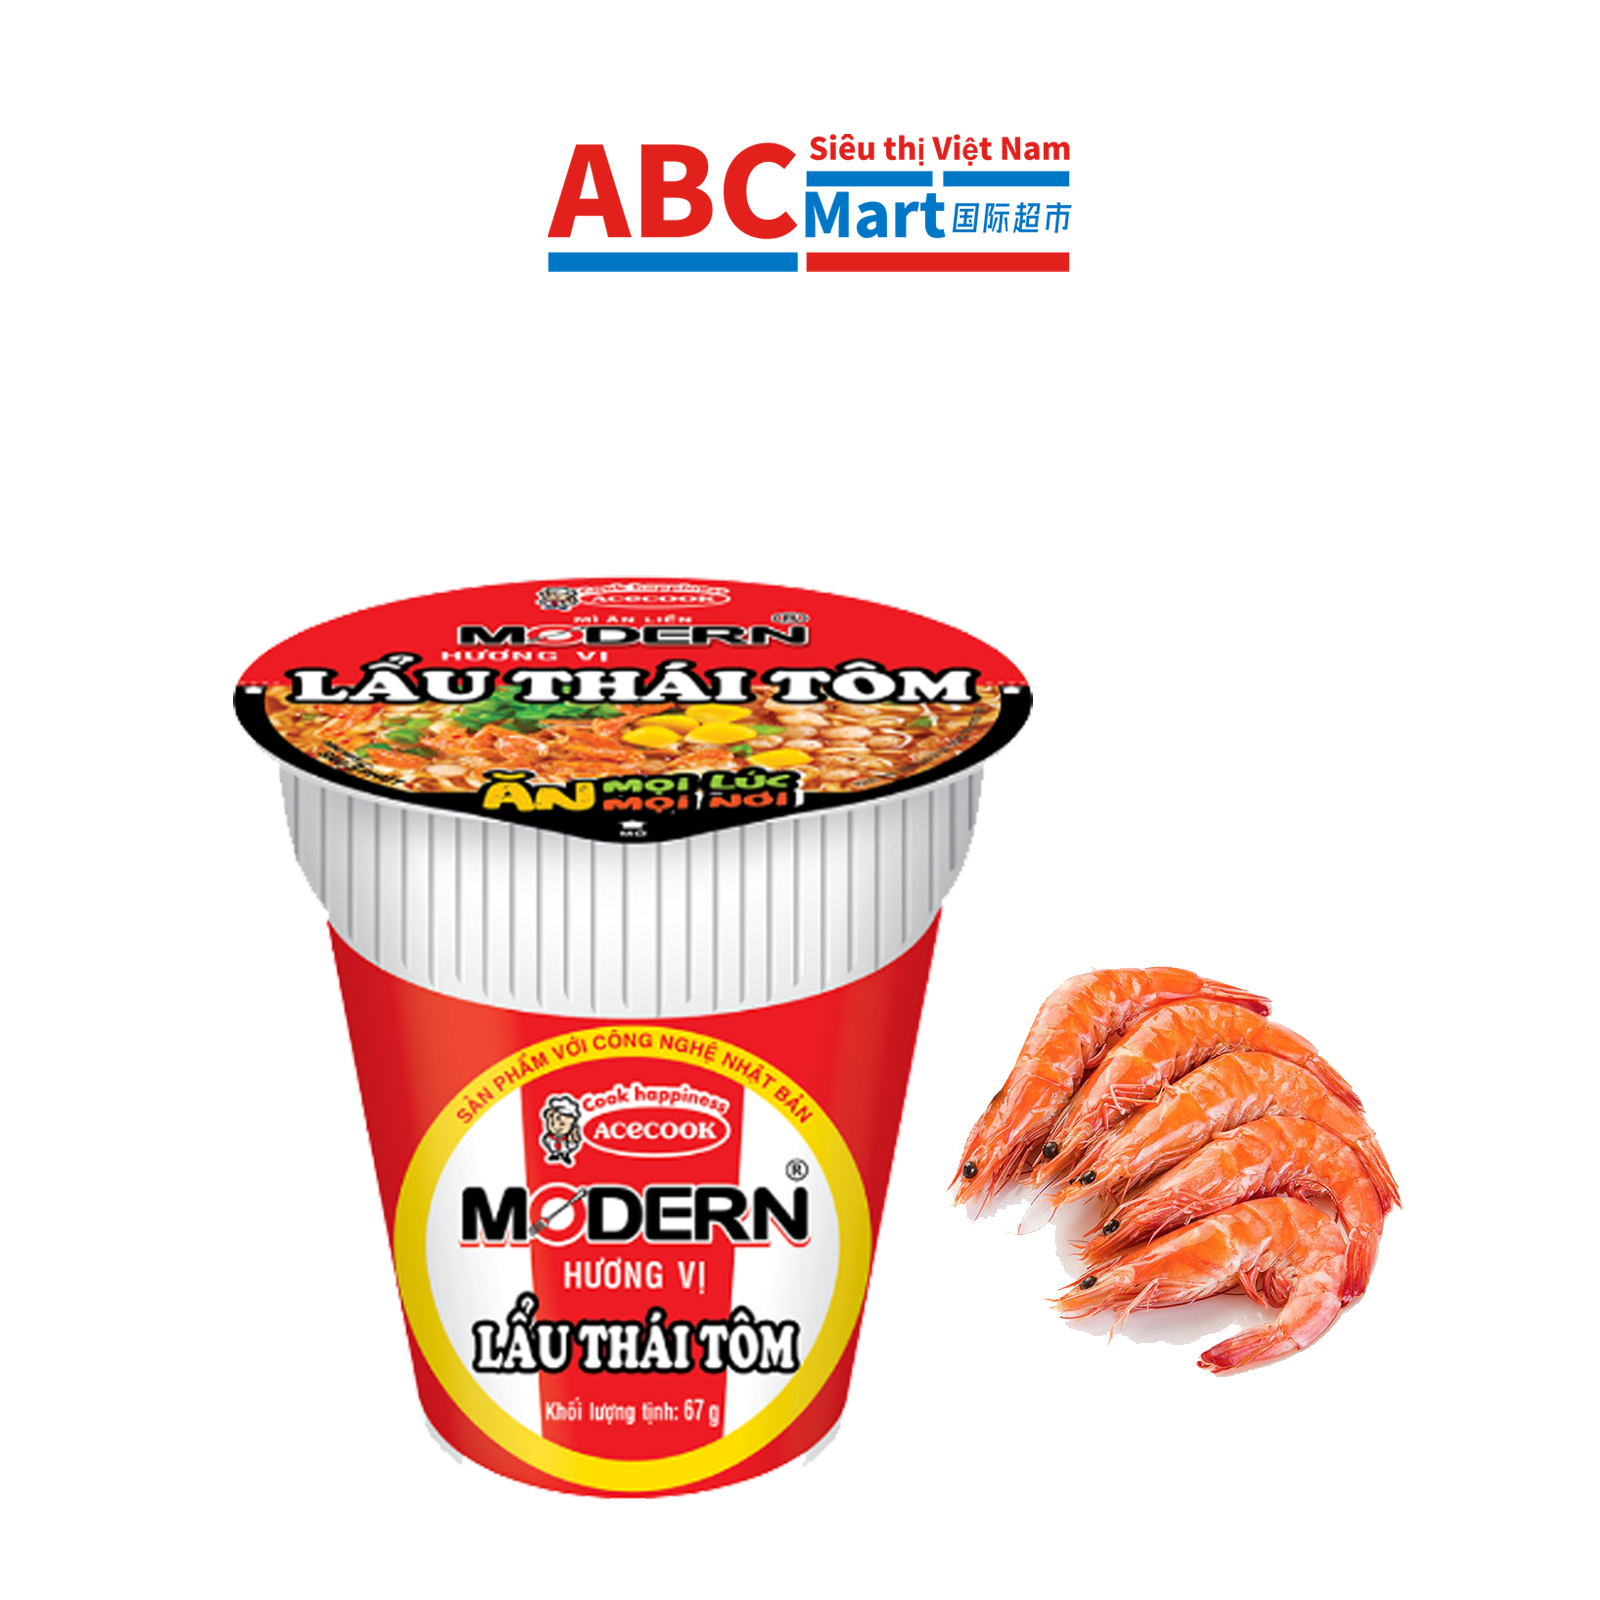 【Việt Nam- Modern Lẩu thái tôm cốc 67g】 Việt Nam火锅虾杯装方便面-ABCMart 国际超市